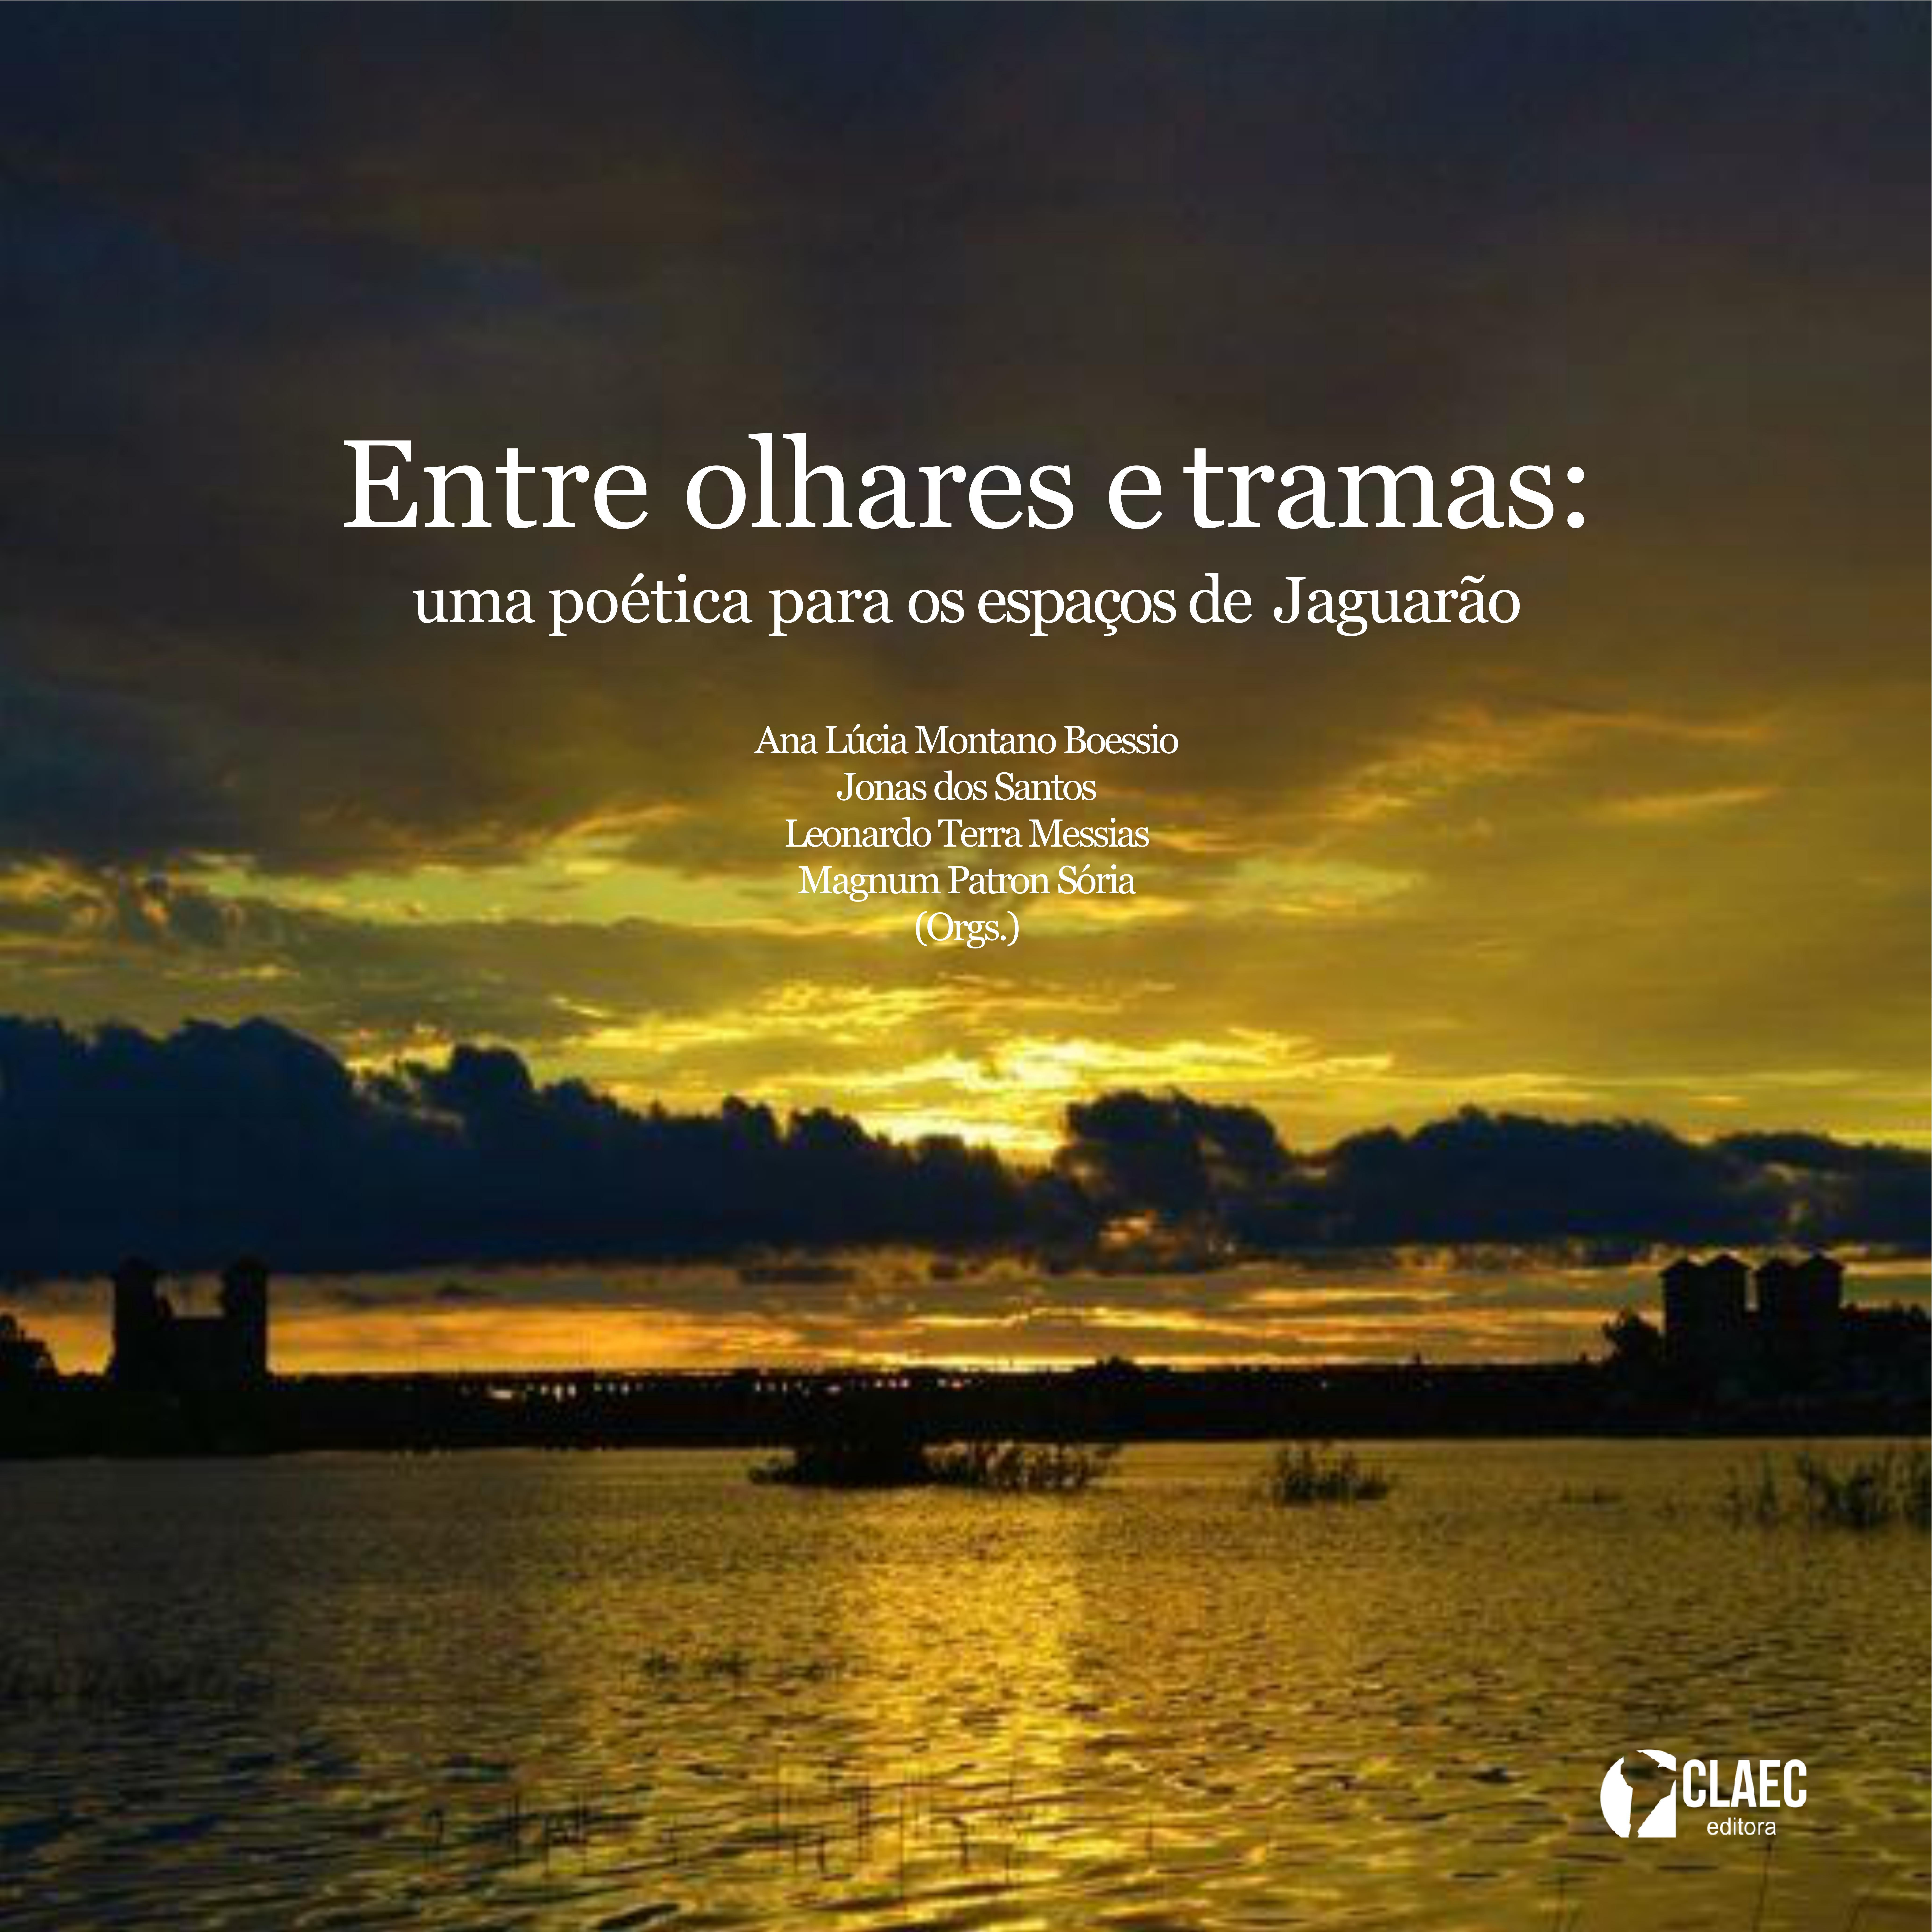 por do sol sobre o rio Jaguarão e a ponte sobre ele, que aparece escurecida em contraluz. título do livro sobre a foto